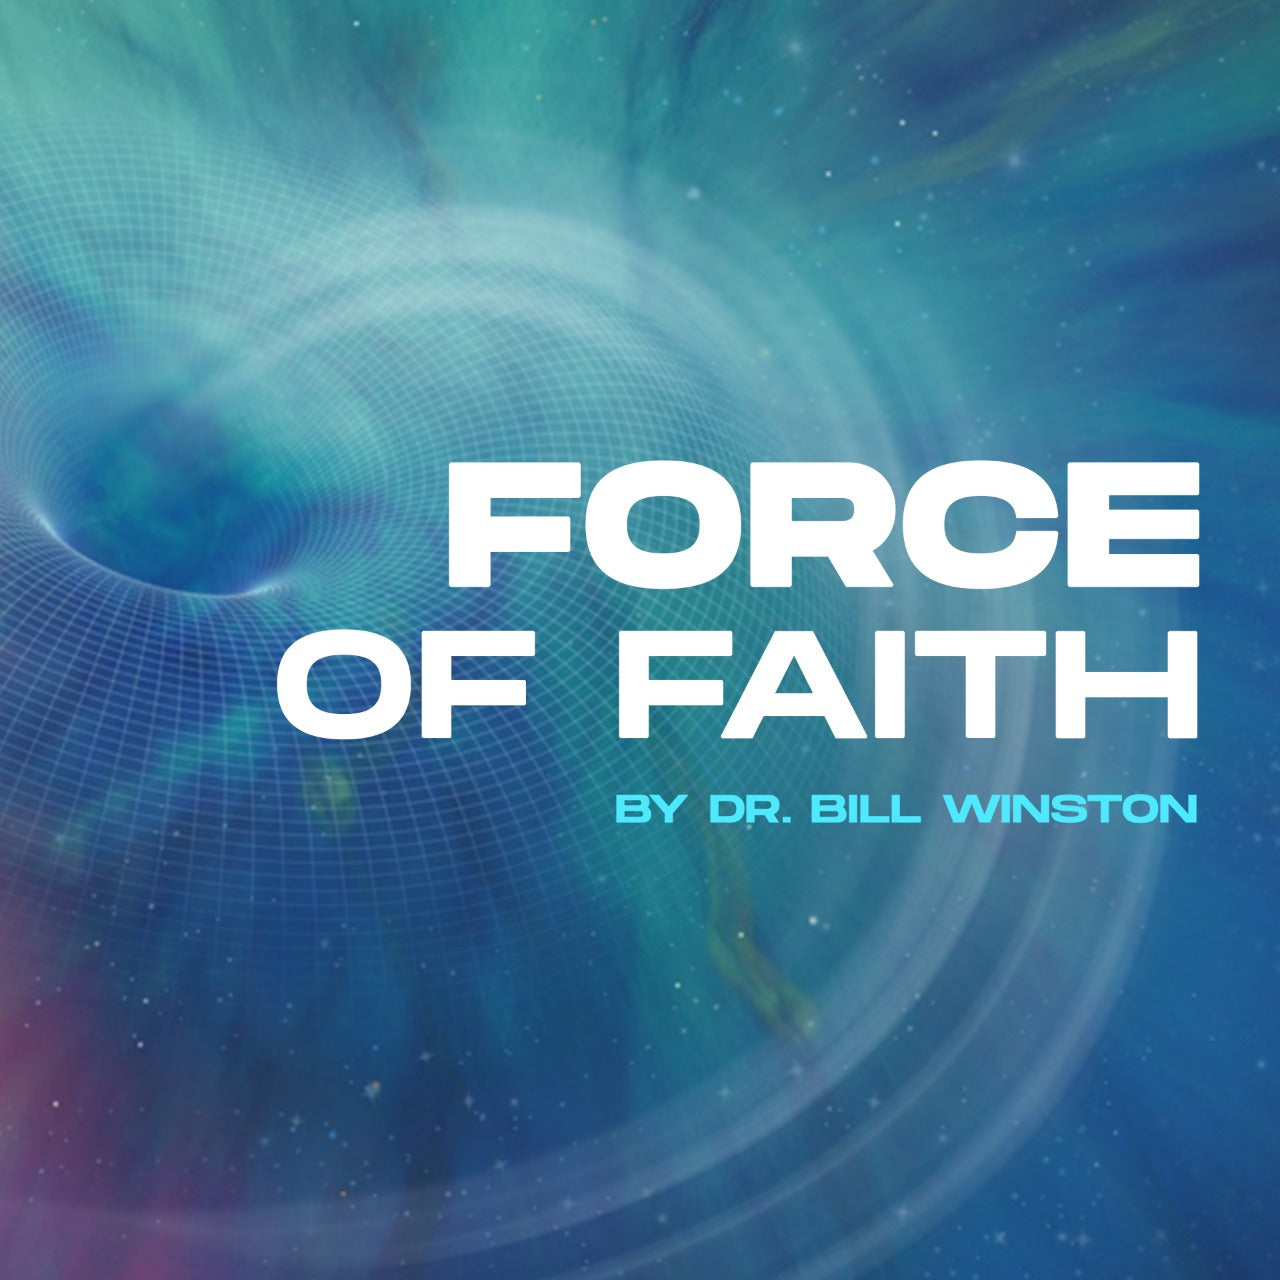 Force of Faith (HFC - 2014) Mp3